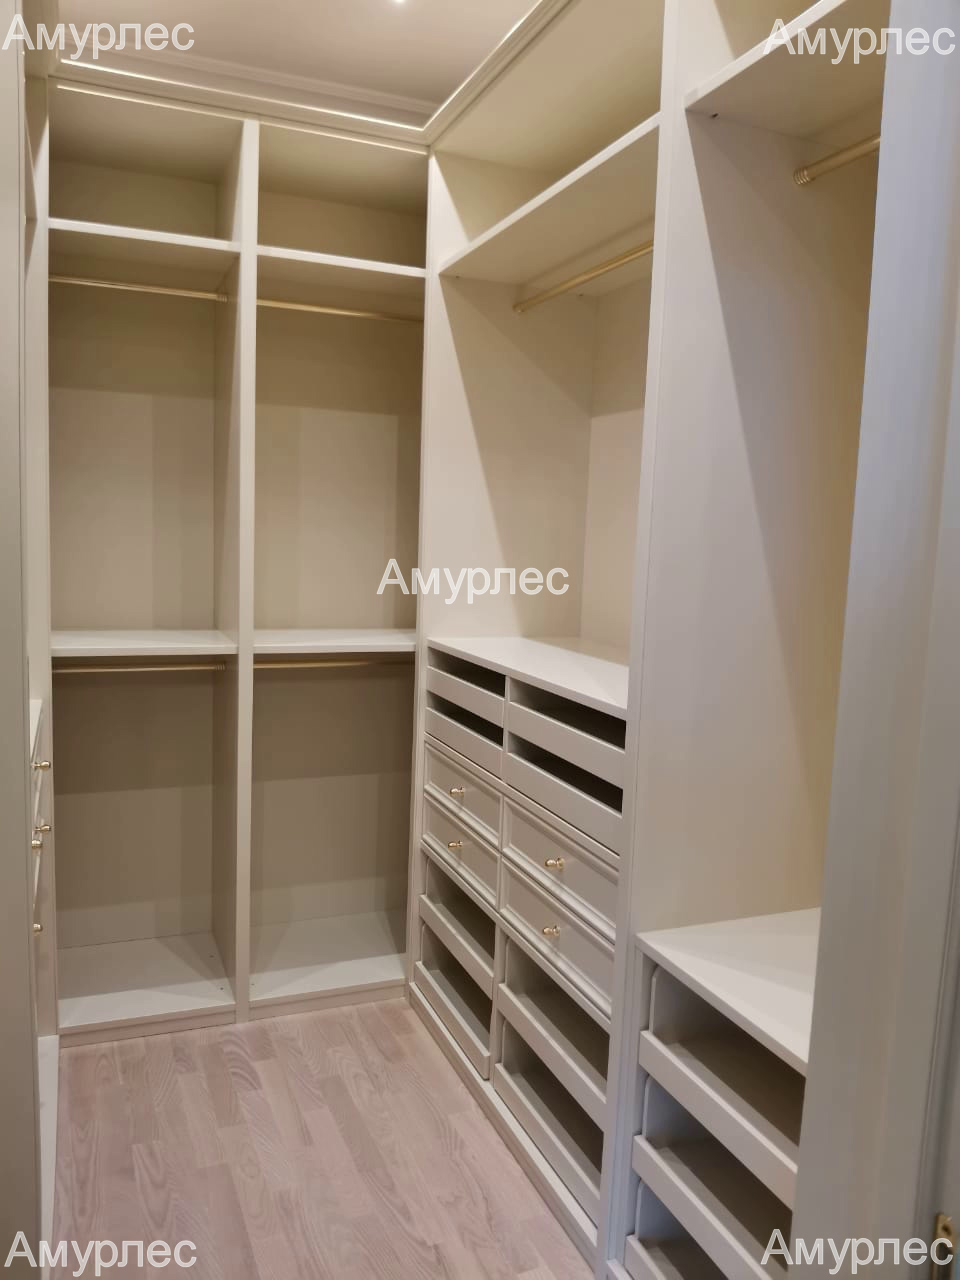 Шкафы в гардеробную комнату с выдвижными ящиками, шпон беленый дуб